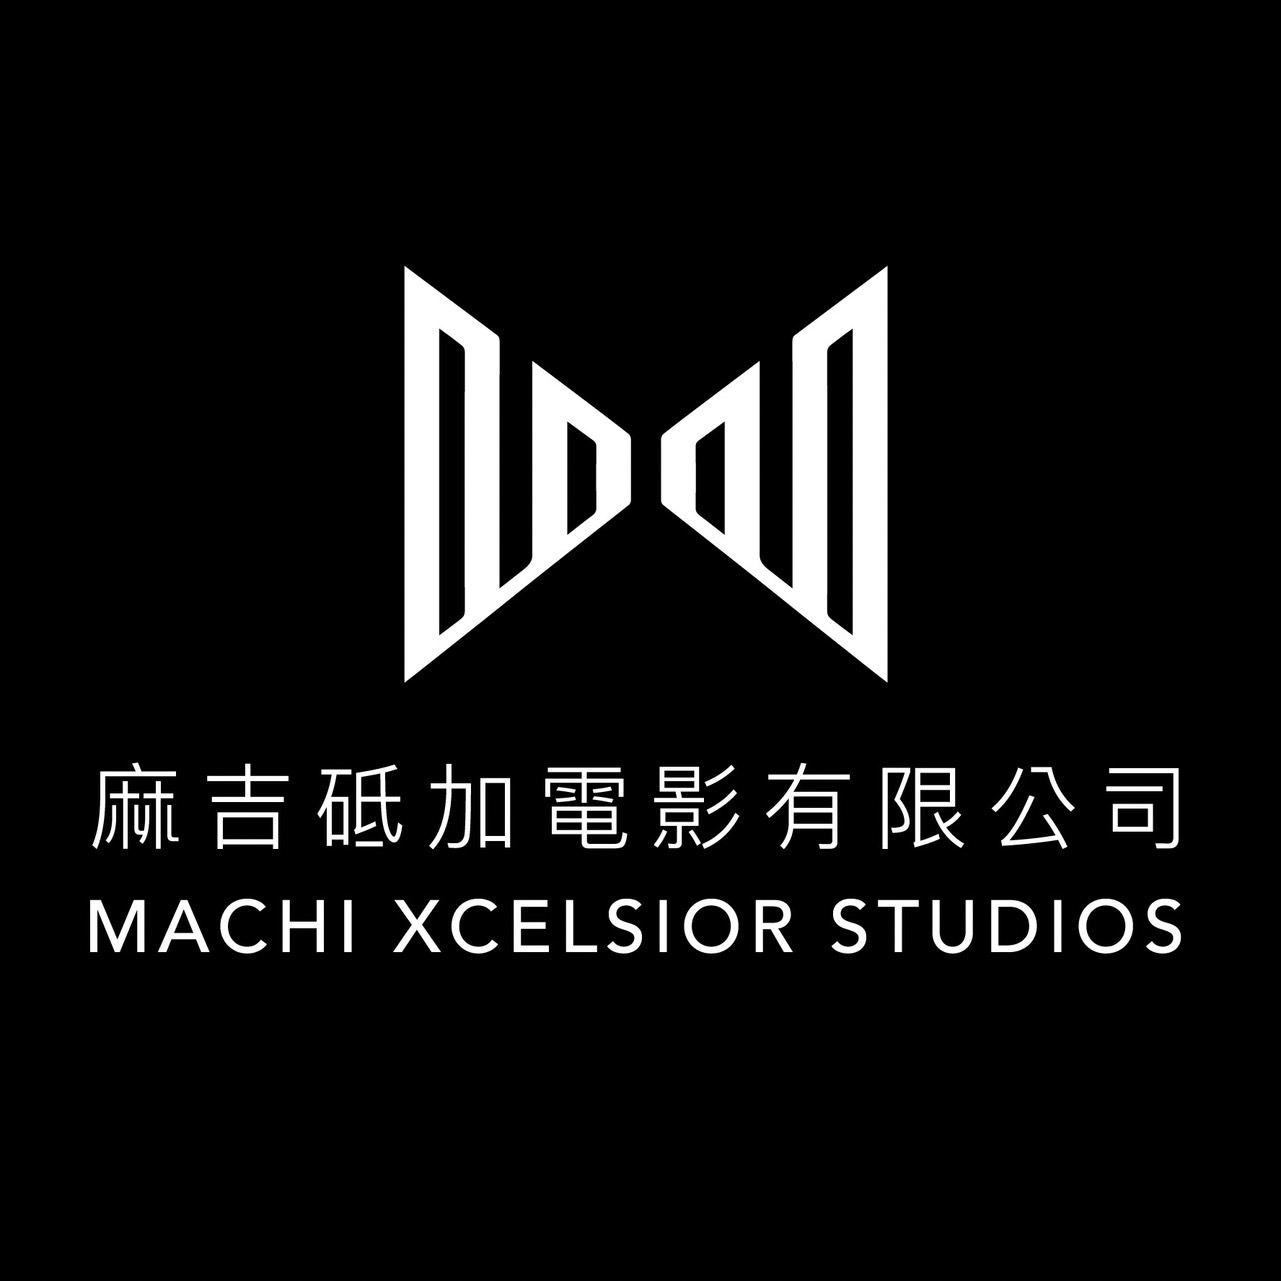 Machi Xcelsior Studios